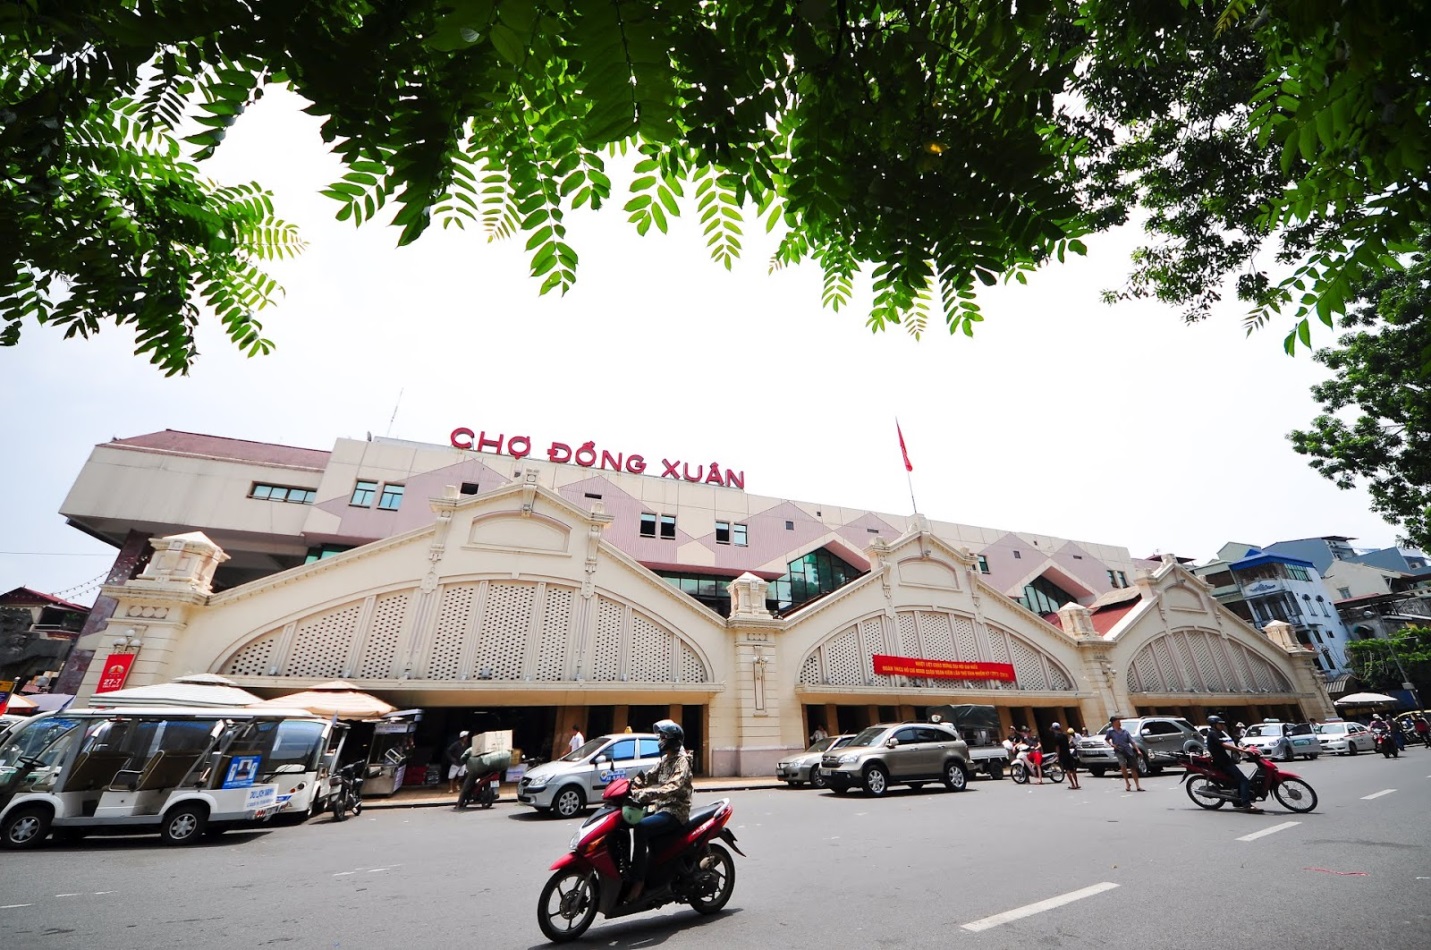 Khám phá những khu chợ đầu mối lớn nhất Việt Nam - Ảnh 2.